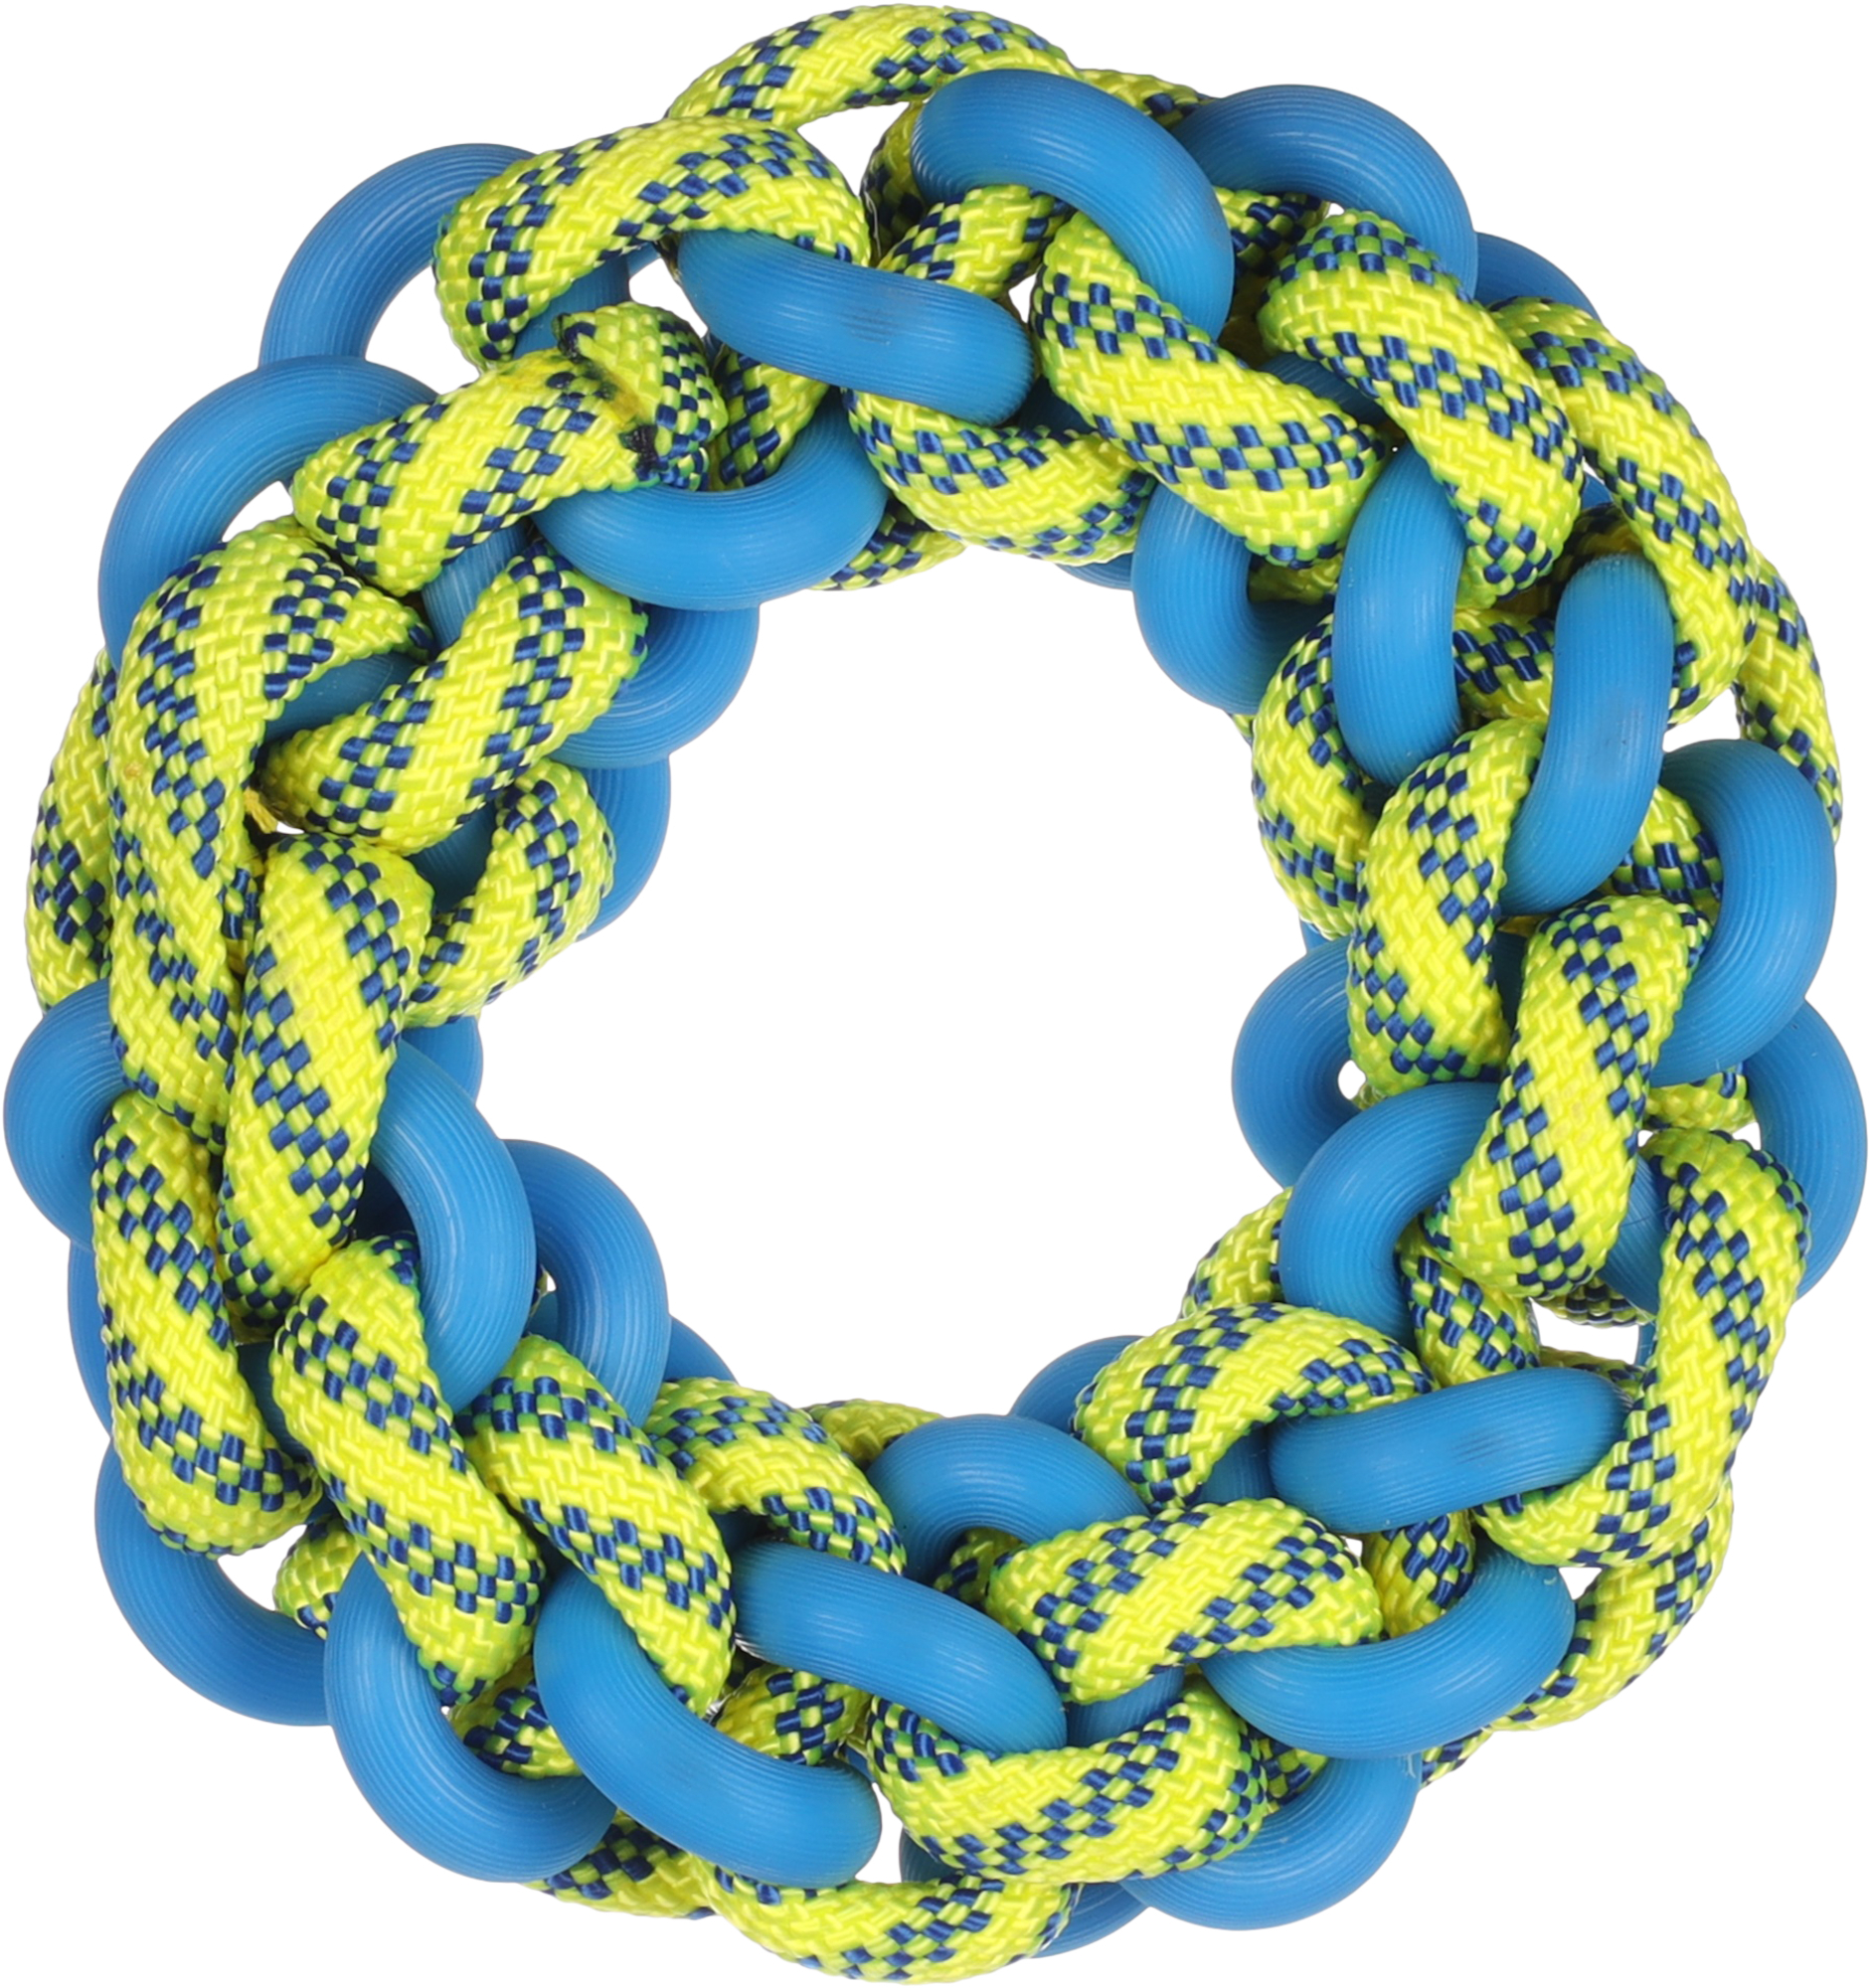 Brinquedo para cão Tofla anel azul/amarelo em borracha e nylon resistente